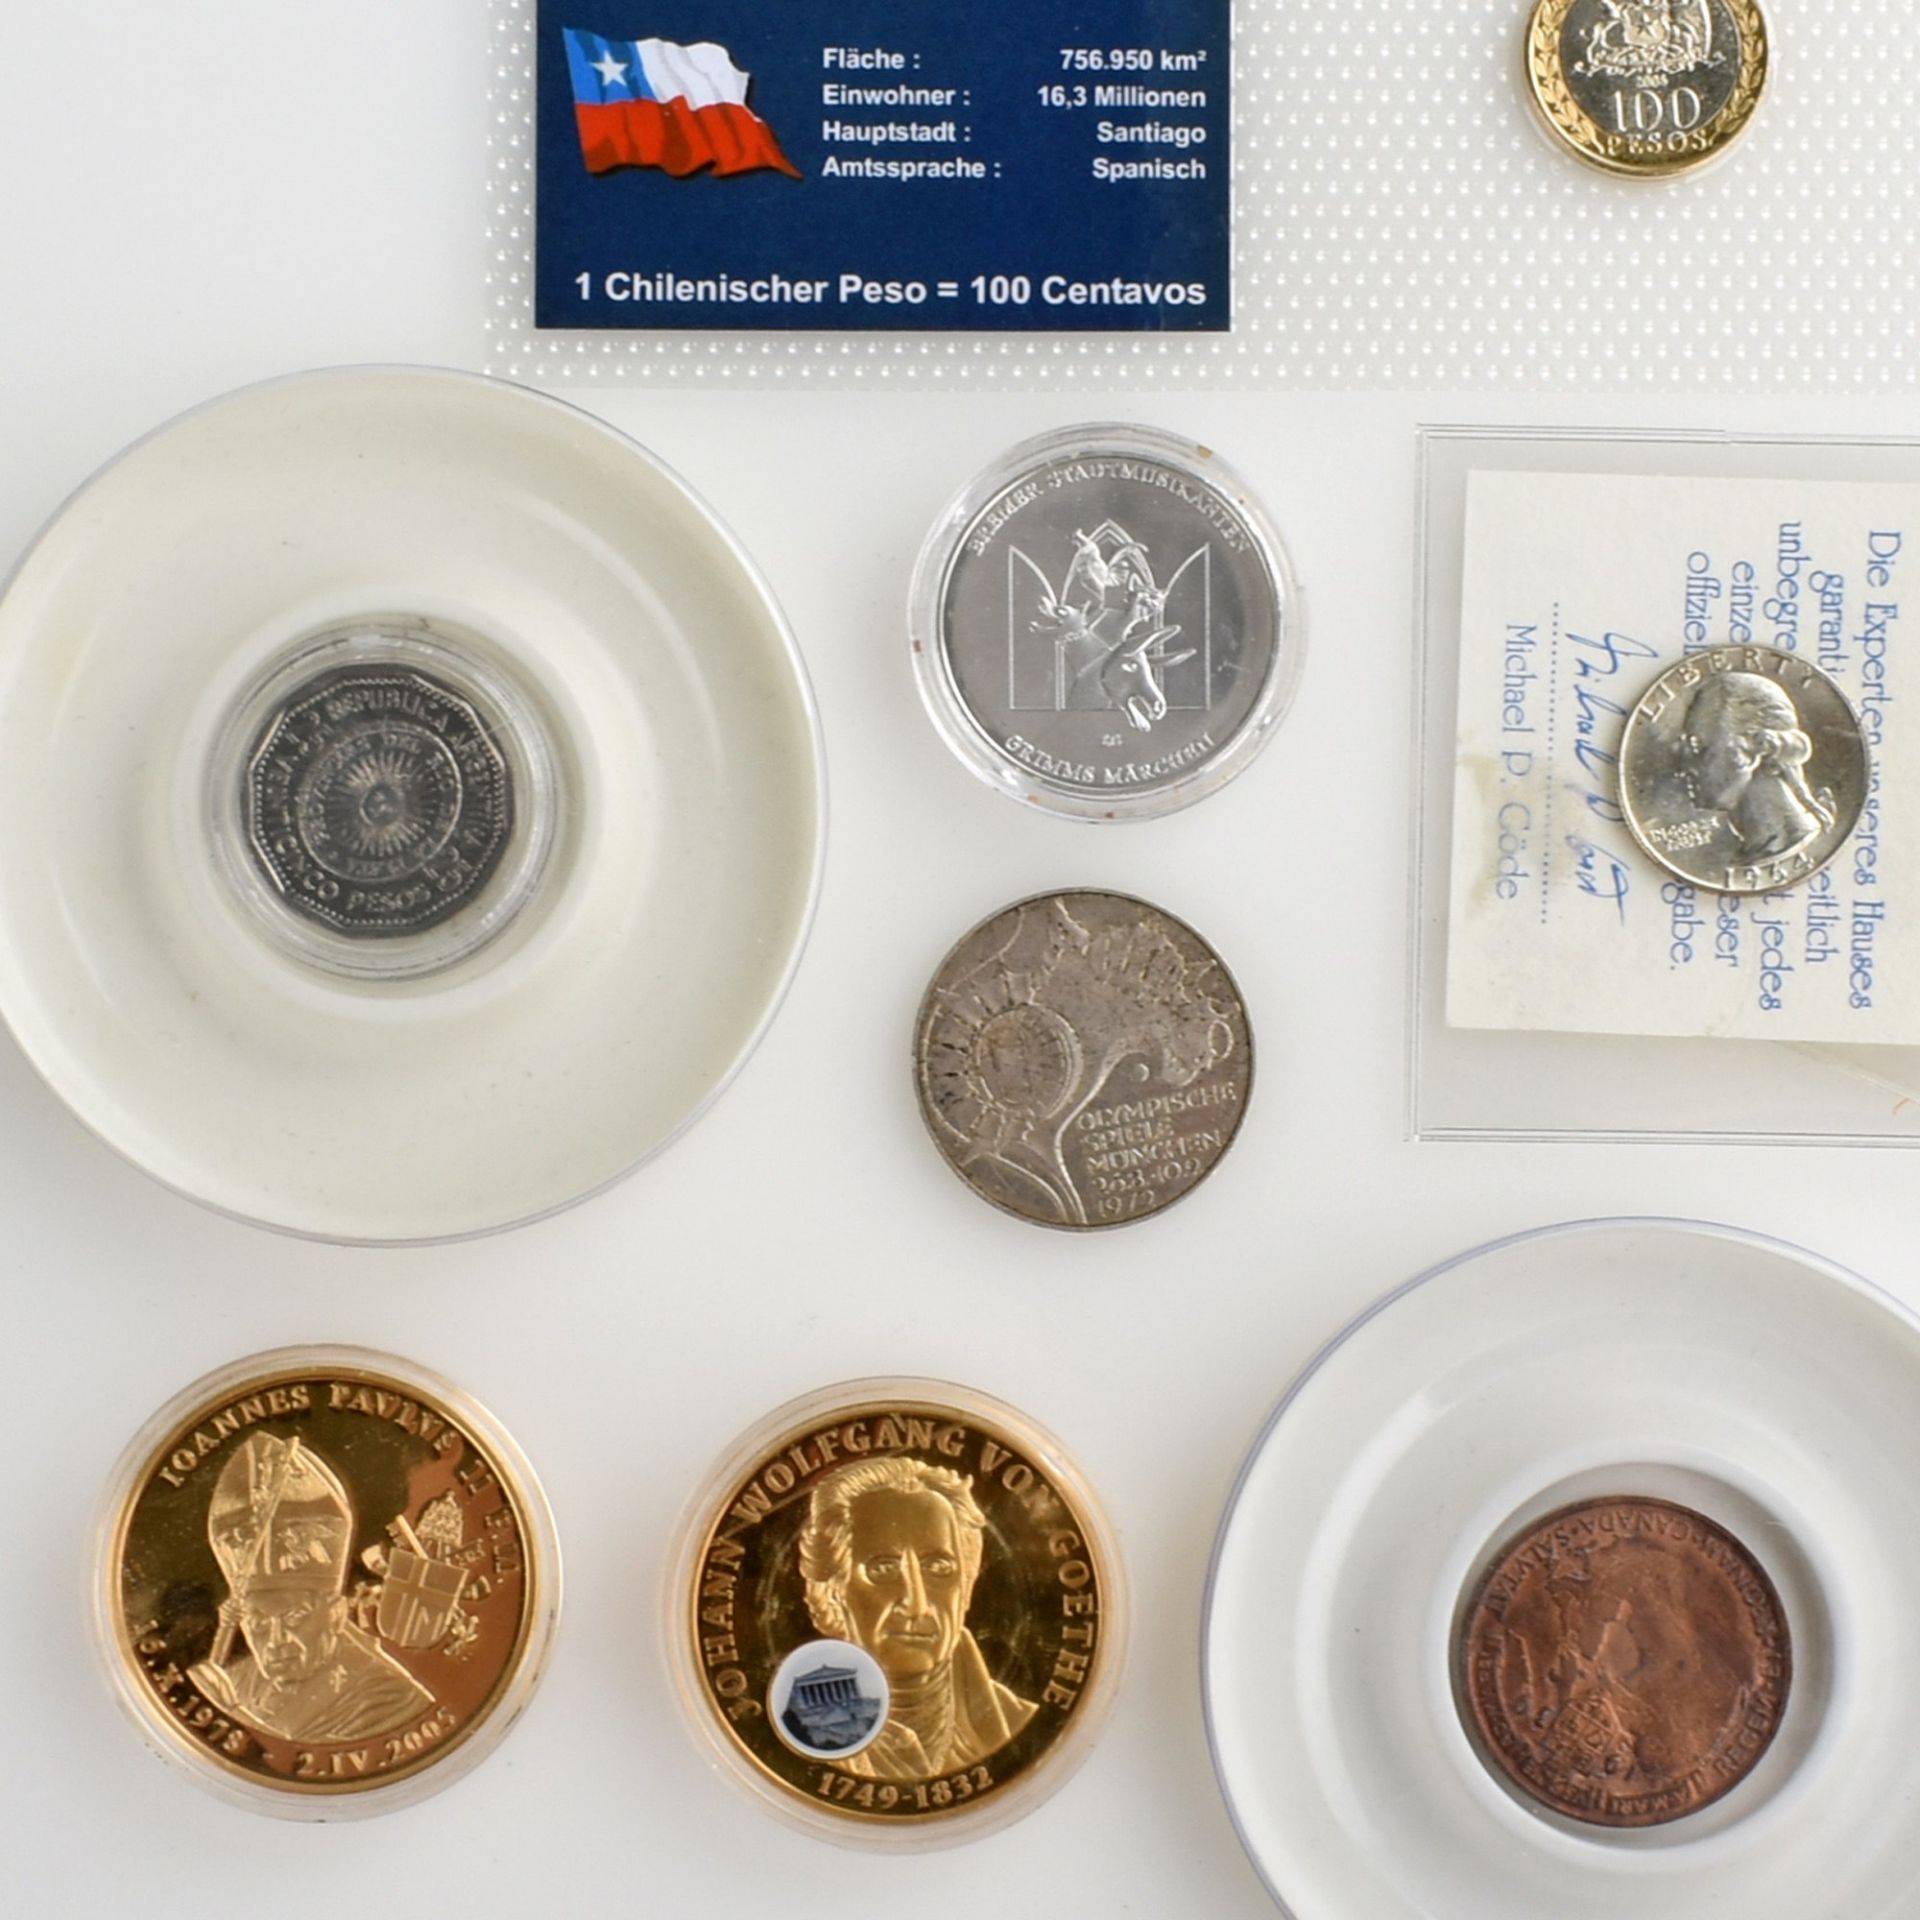 Konvolut Münzen und Gedenkprägungen insg. wohl an die 60 Stück, dabei u.a.: 1 x 10 DM in Silber